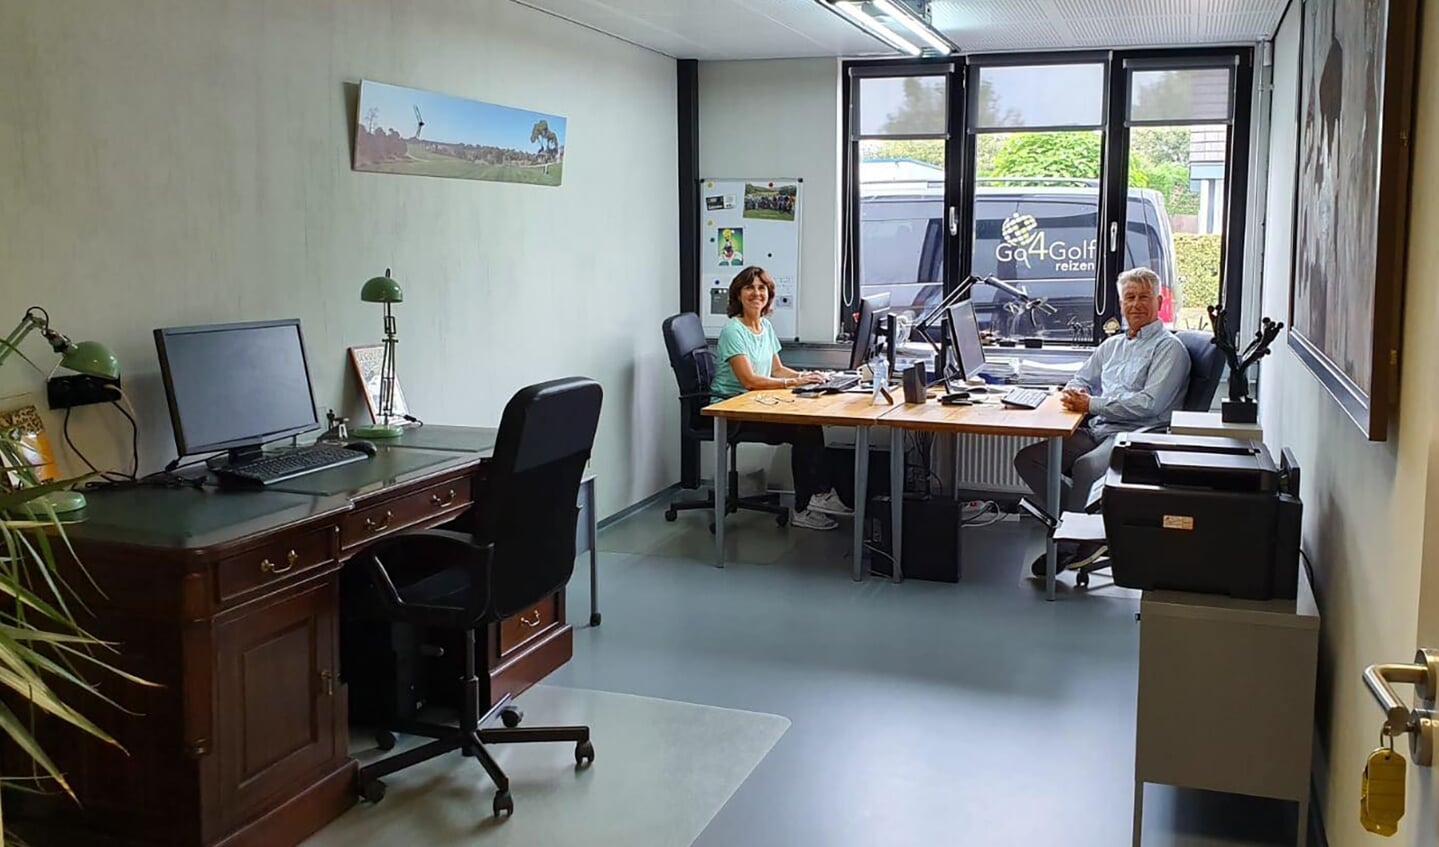 Peter en Bernadette aan het werk in het kantoor van Go4Golf Reizen.